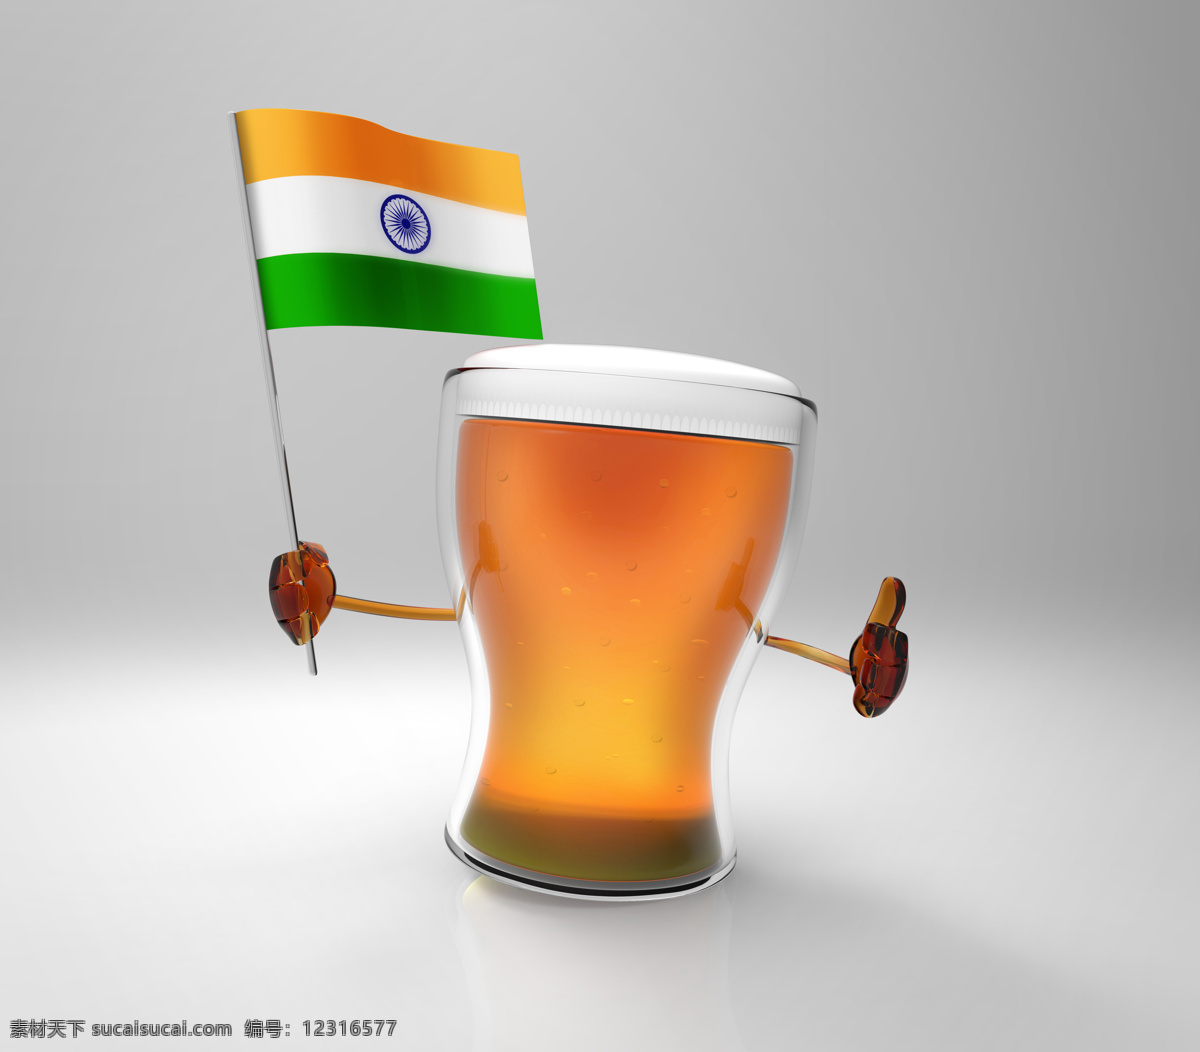 印度 国旗 啤酒 印度国旗 旗子 酒水饮料 酒类图片 餐饮美食